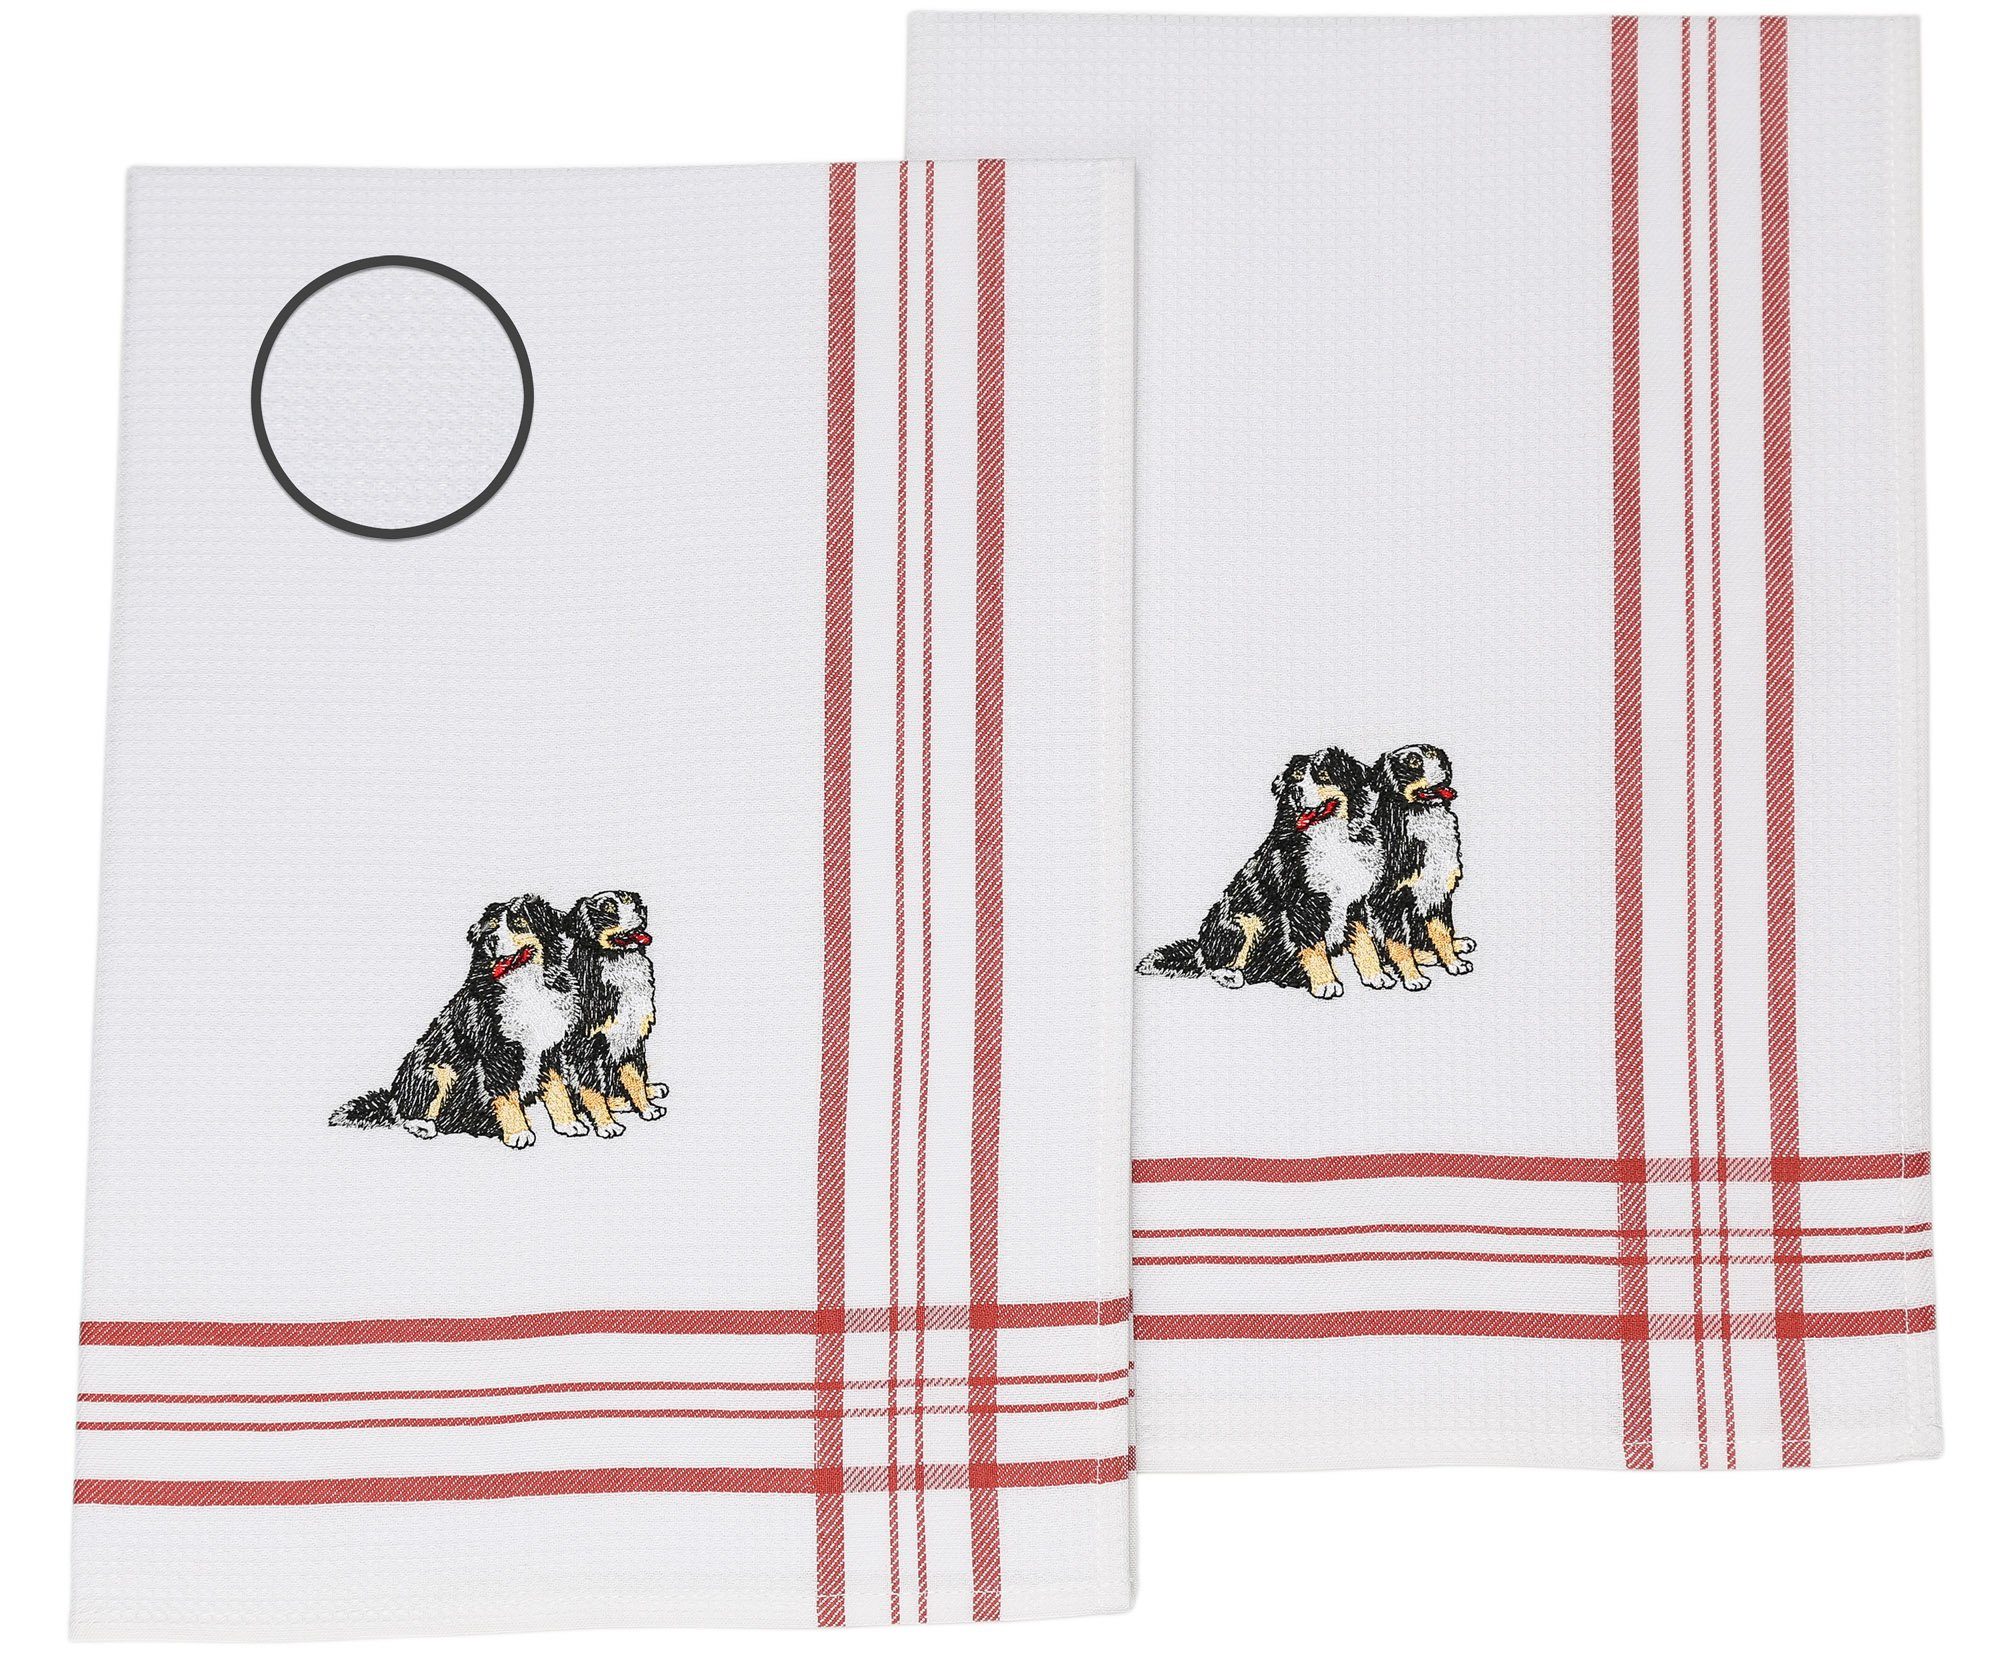 Betz Geschirrtuch 2 Stück Geschirrtücher Küchenhandtuch Gläsertücher Waffelpiqué rot Bestickt Motiv Hunde Größe: 50 x 70 cm